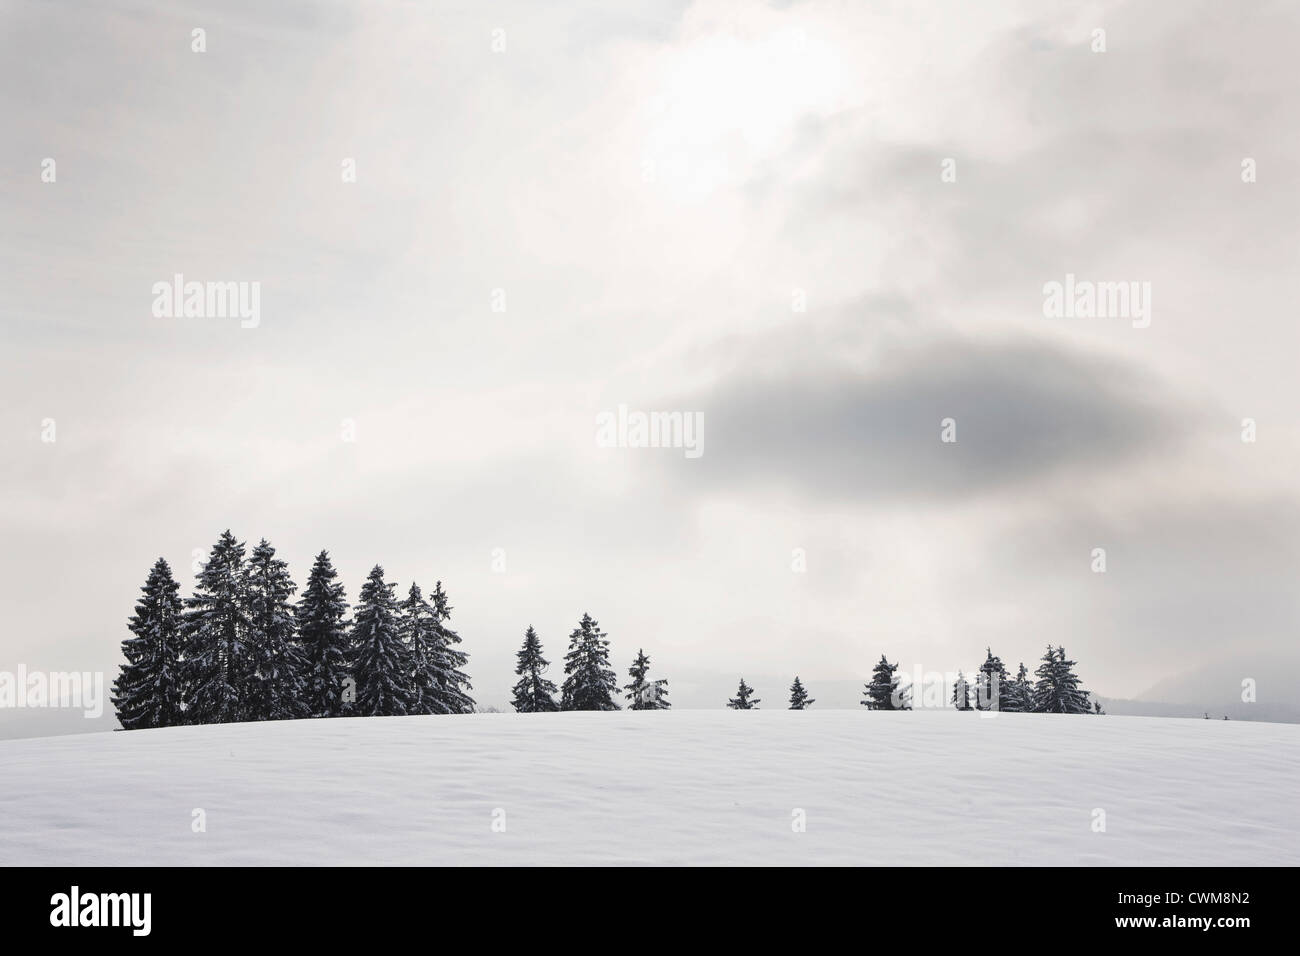 Germany, Bavaria, vue de paysage d'hiver Banque D'Images